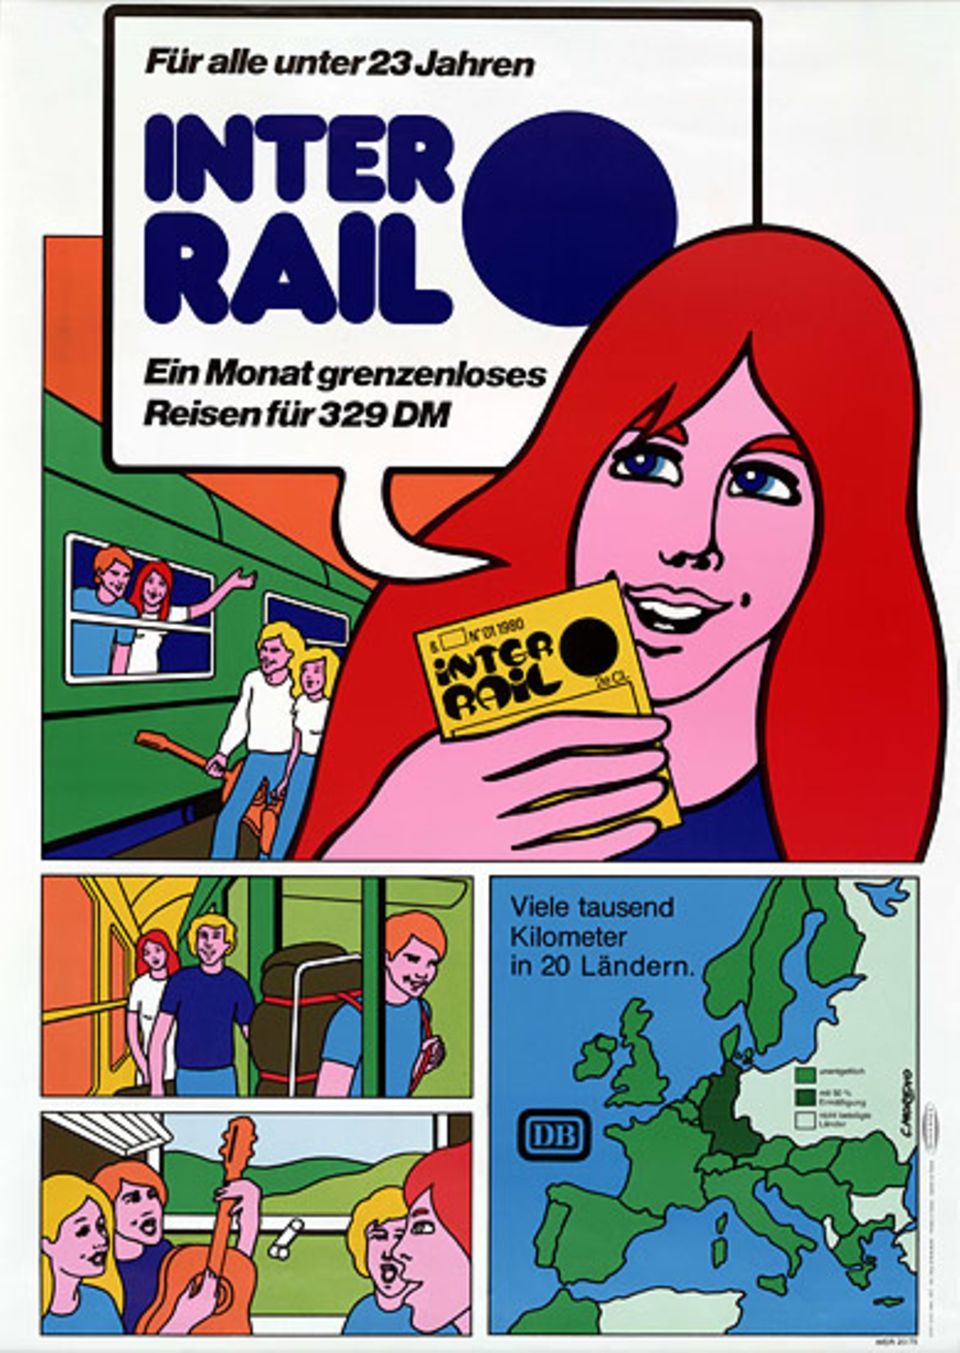 40 Jahre Interrail: Die Werbeplakate für Interrail passten sich der Zeit an, wie dieses Exemplar von 1980.